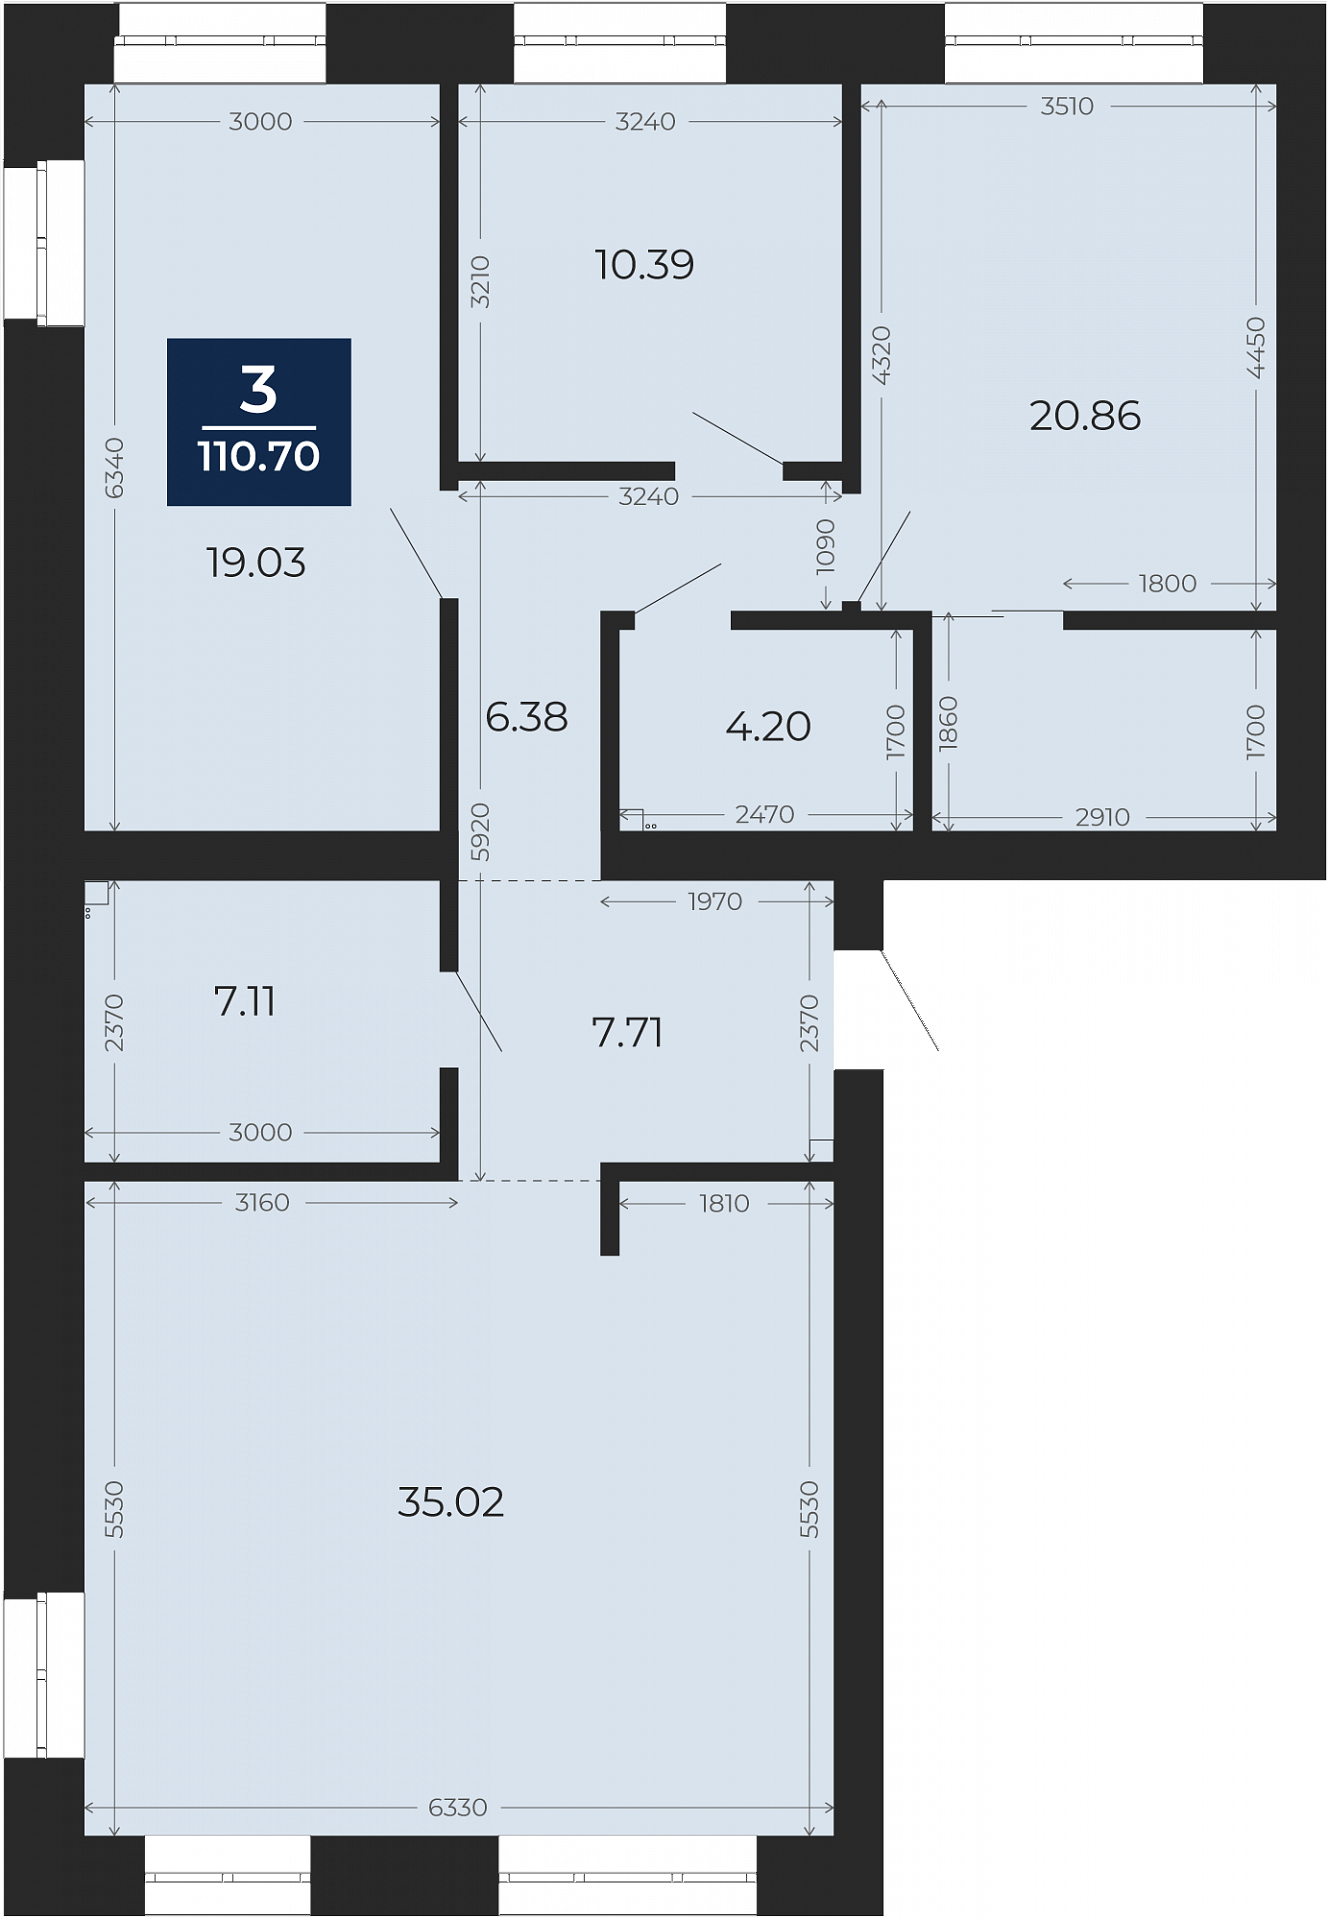 Квартира № 251, 3-комнатная, 110.7 кв. м, 10 этаж